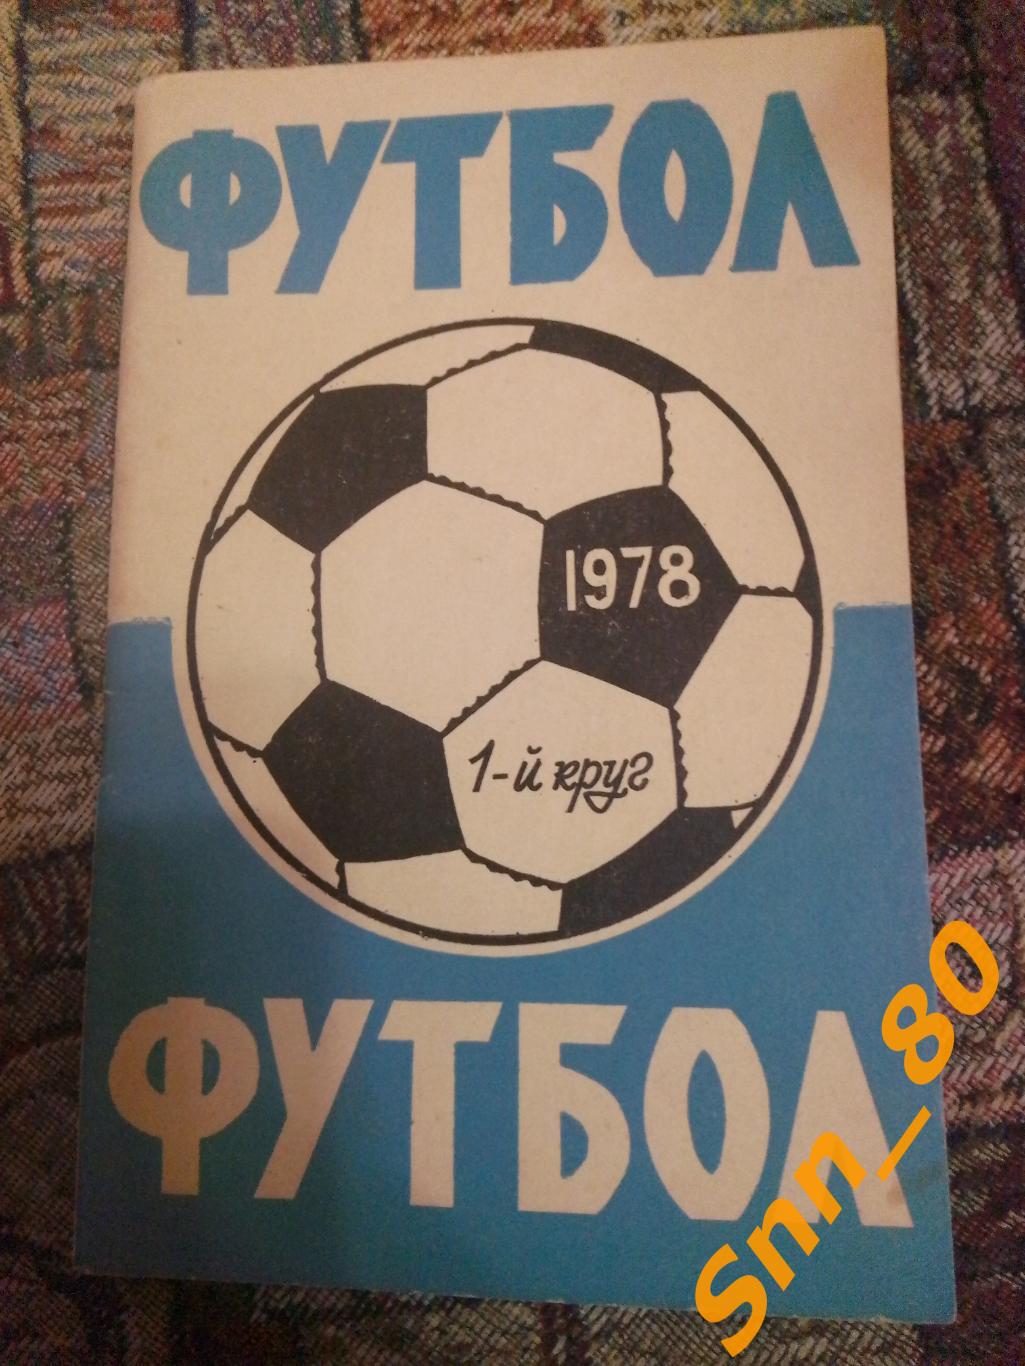 Календарь-справочник Футбол Ростов-на-Дону 1978 1-й круг